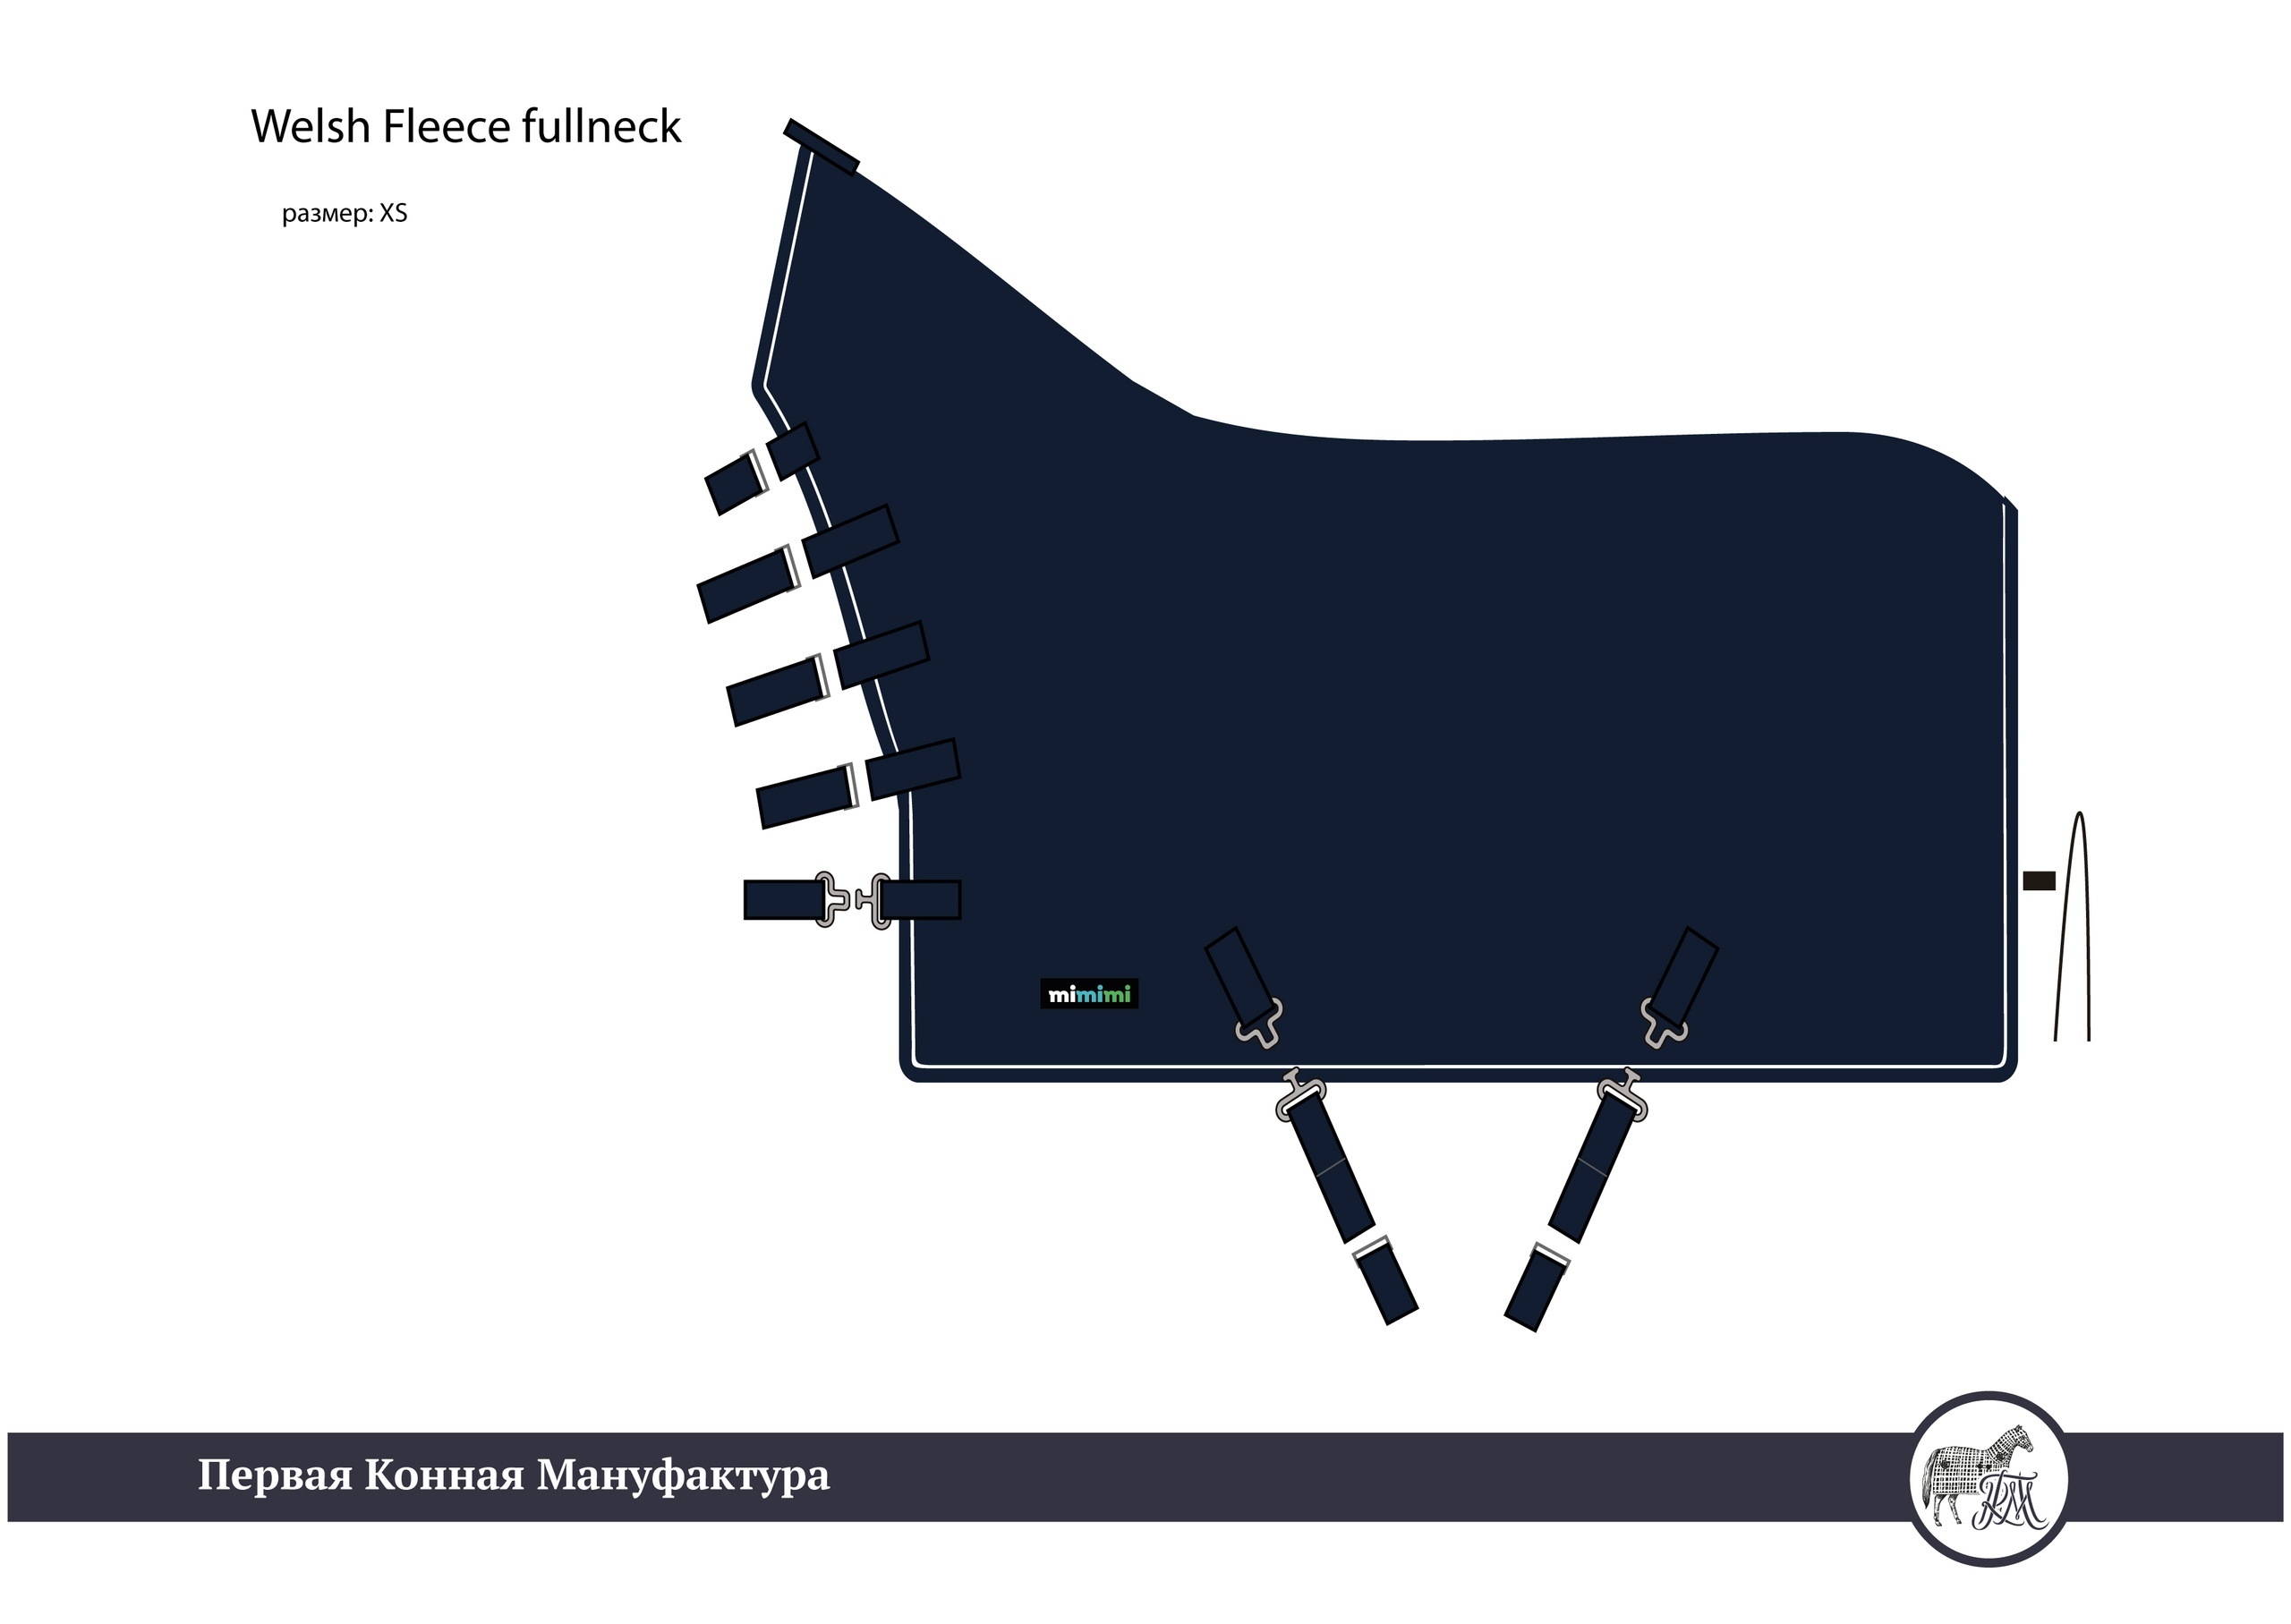 Попона флисовая Welsh Fleece fullneck тёмно-синий первая конная мануфактура